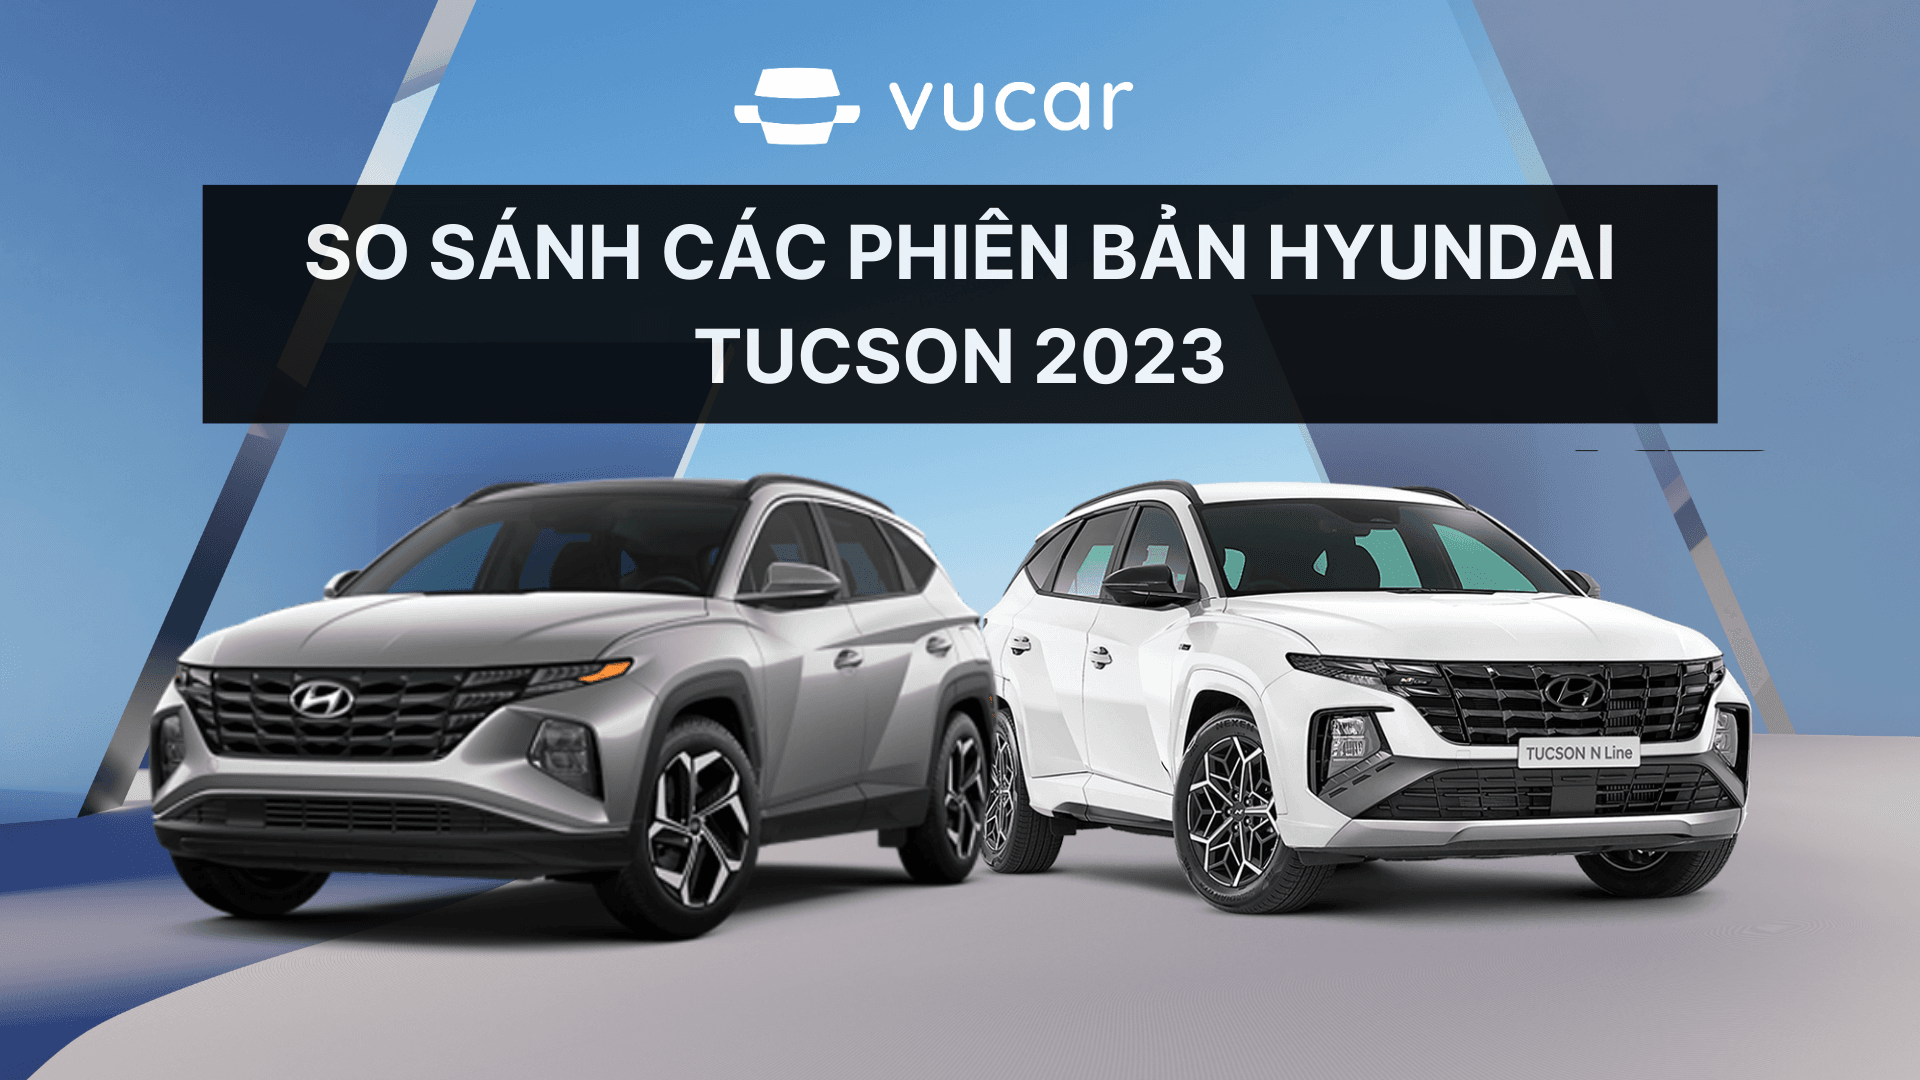 So sánh các phiên bản Hyundai Tucson 2023